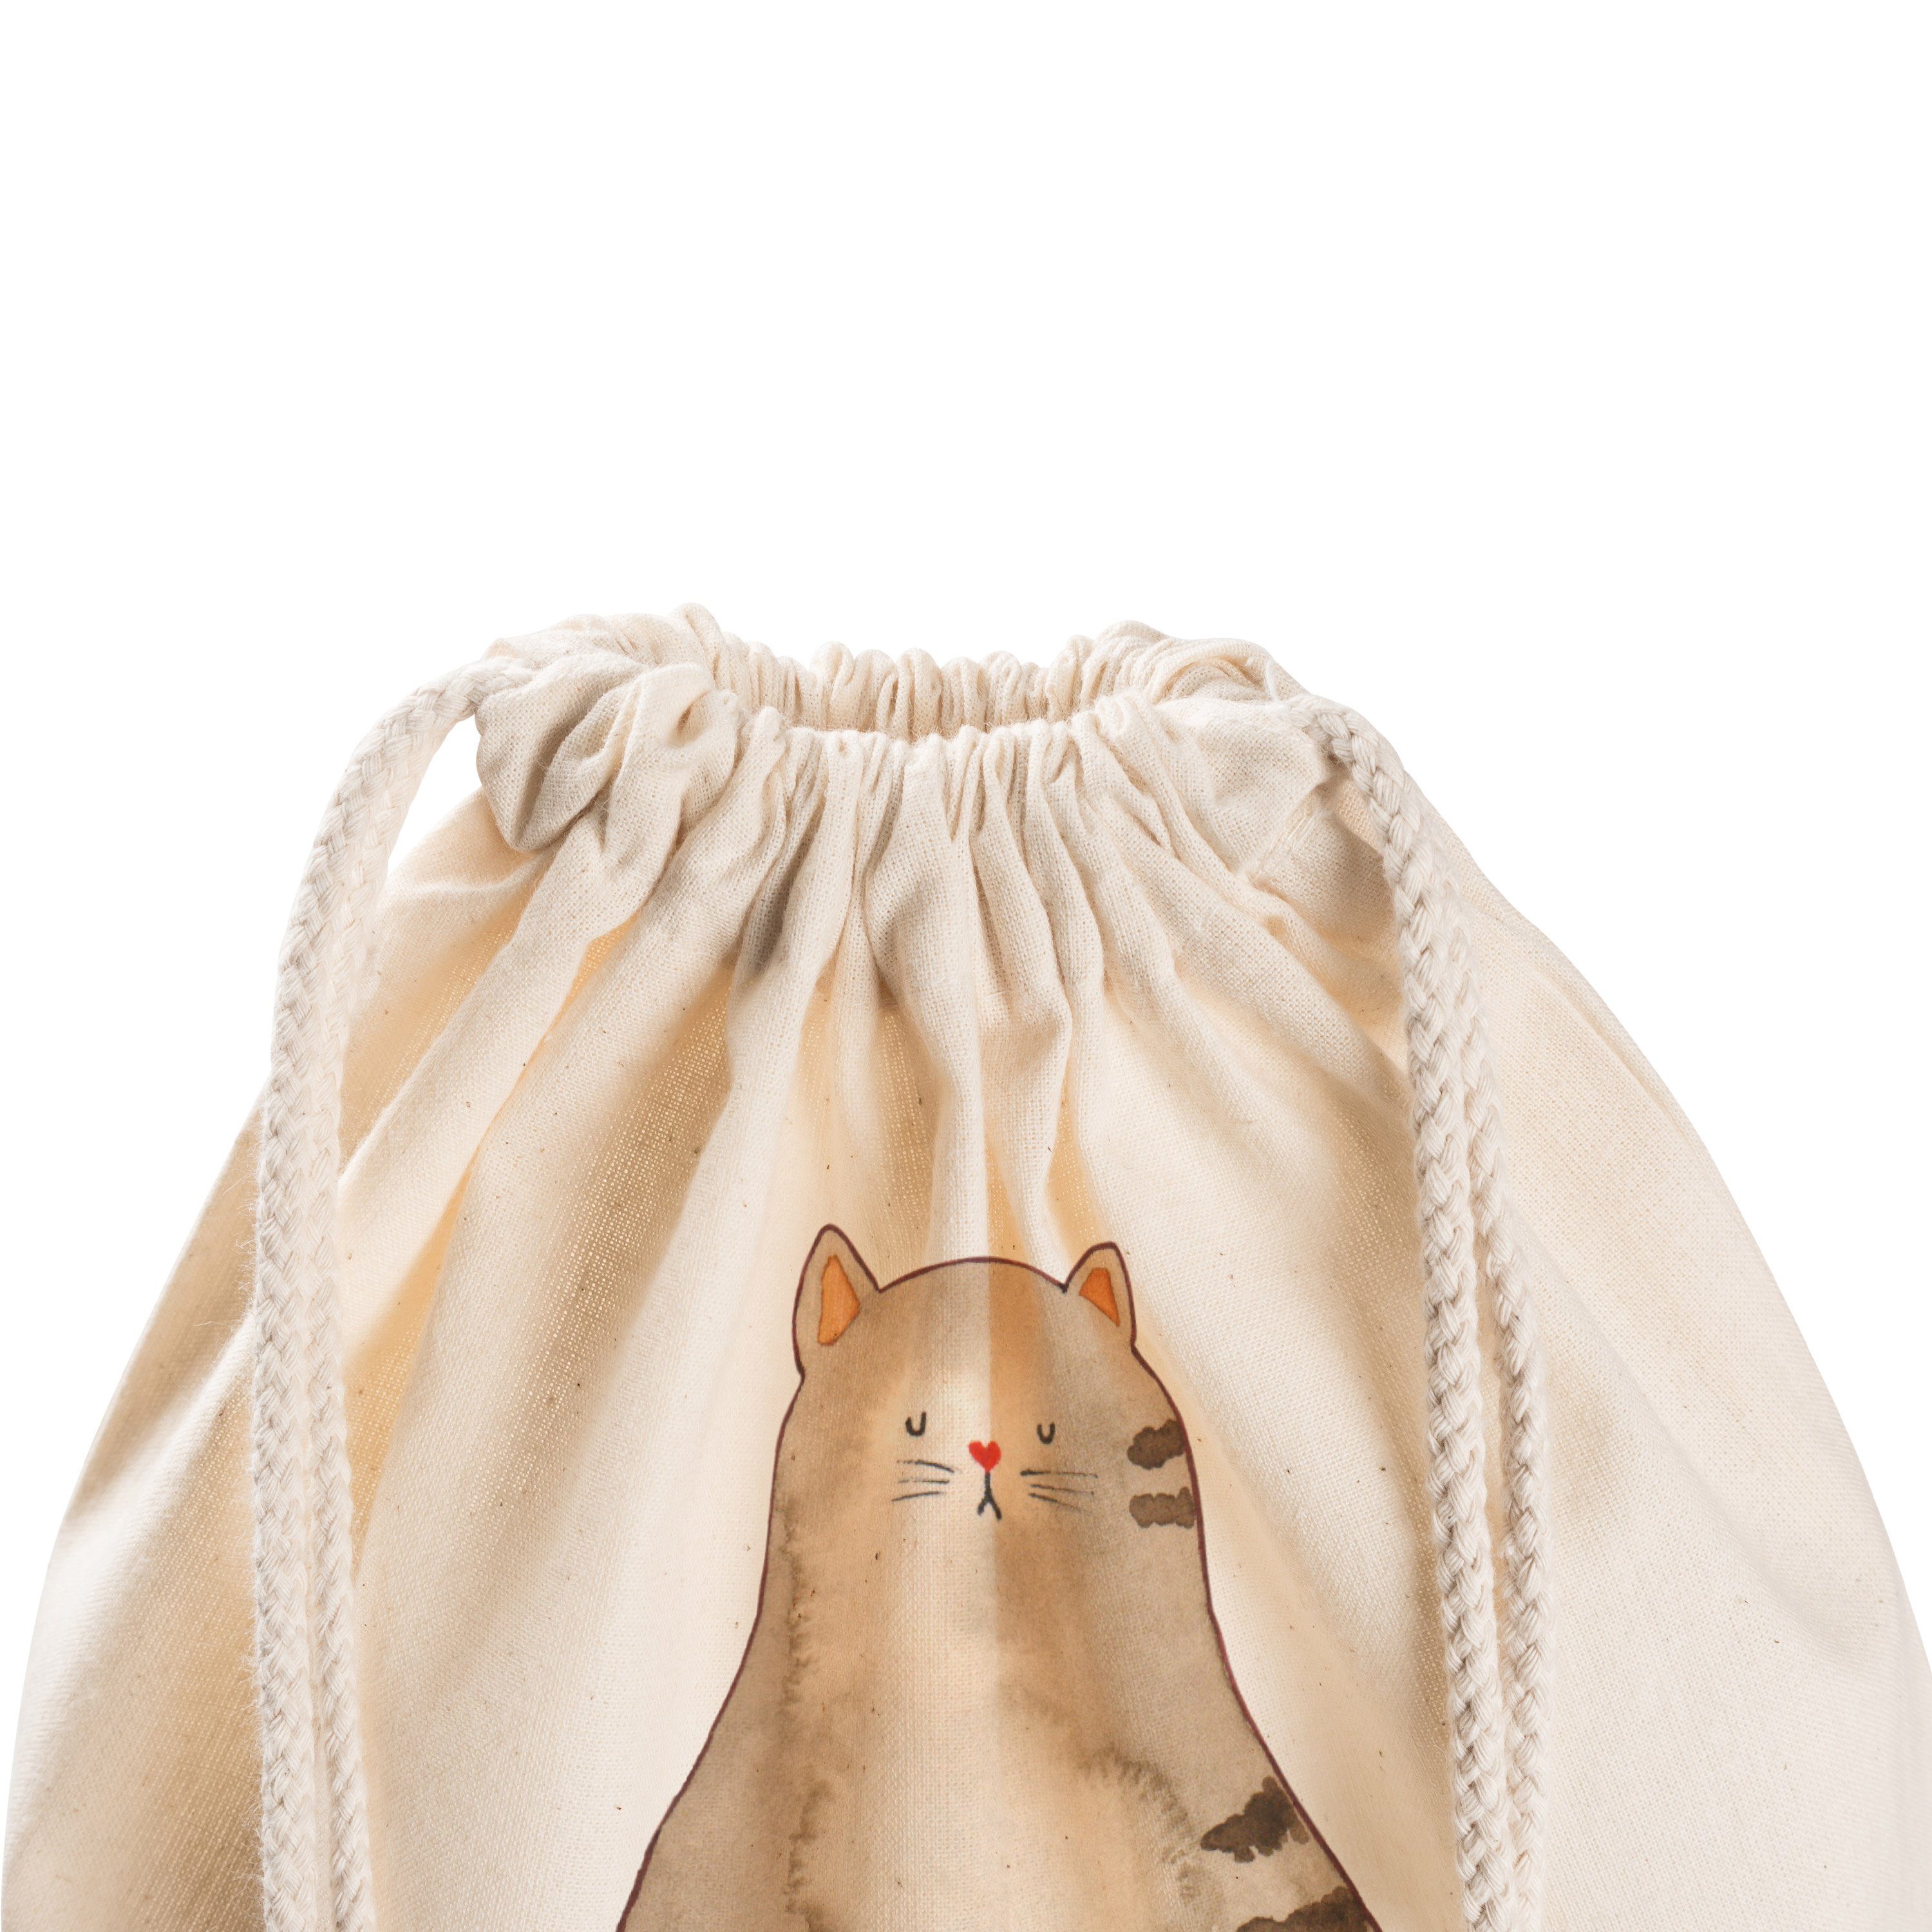 Katzen Sporttasche - flauschig, Turnbeutel, Geschenk, - (1-tlg) sitzend Mr. Mrs. Panda Katze Transparent &